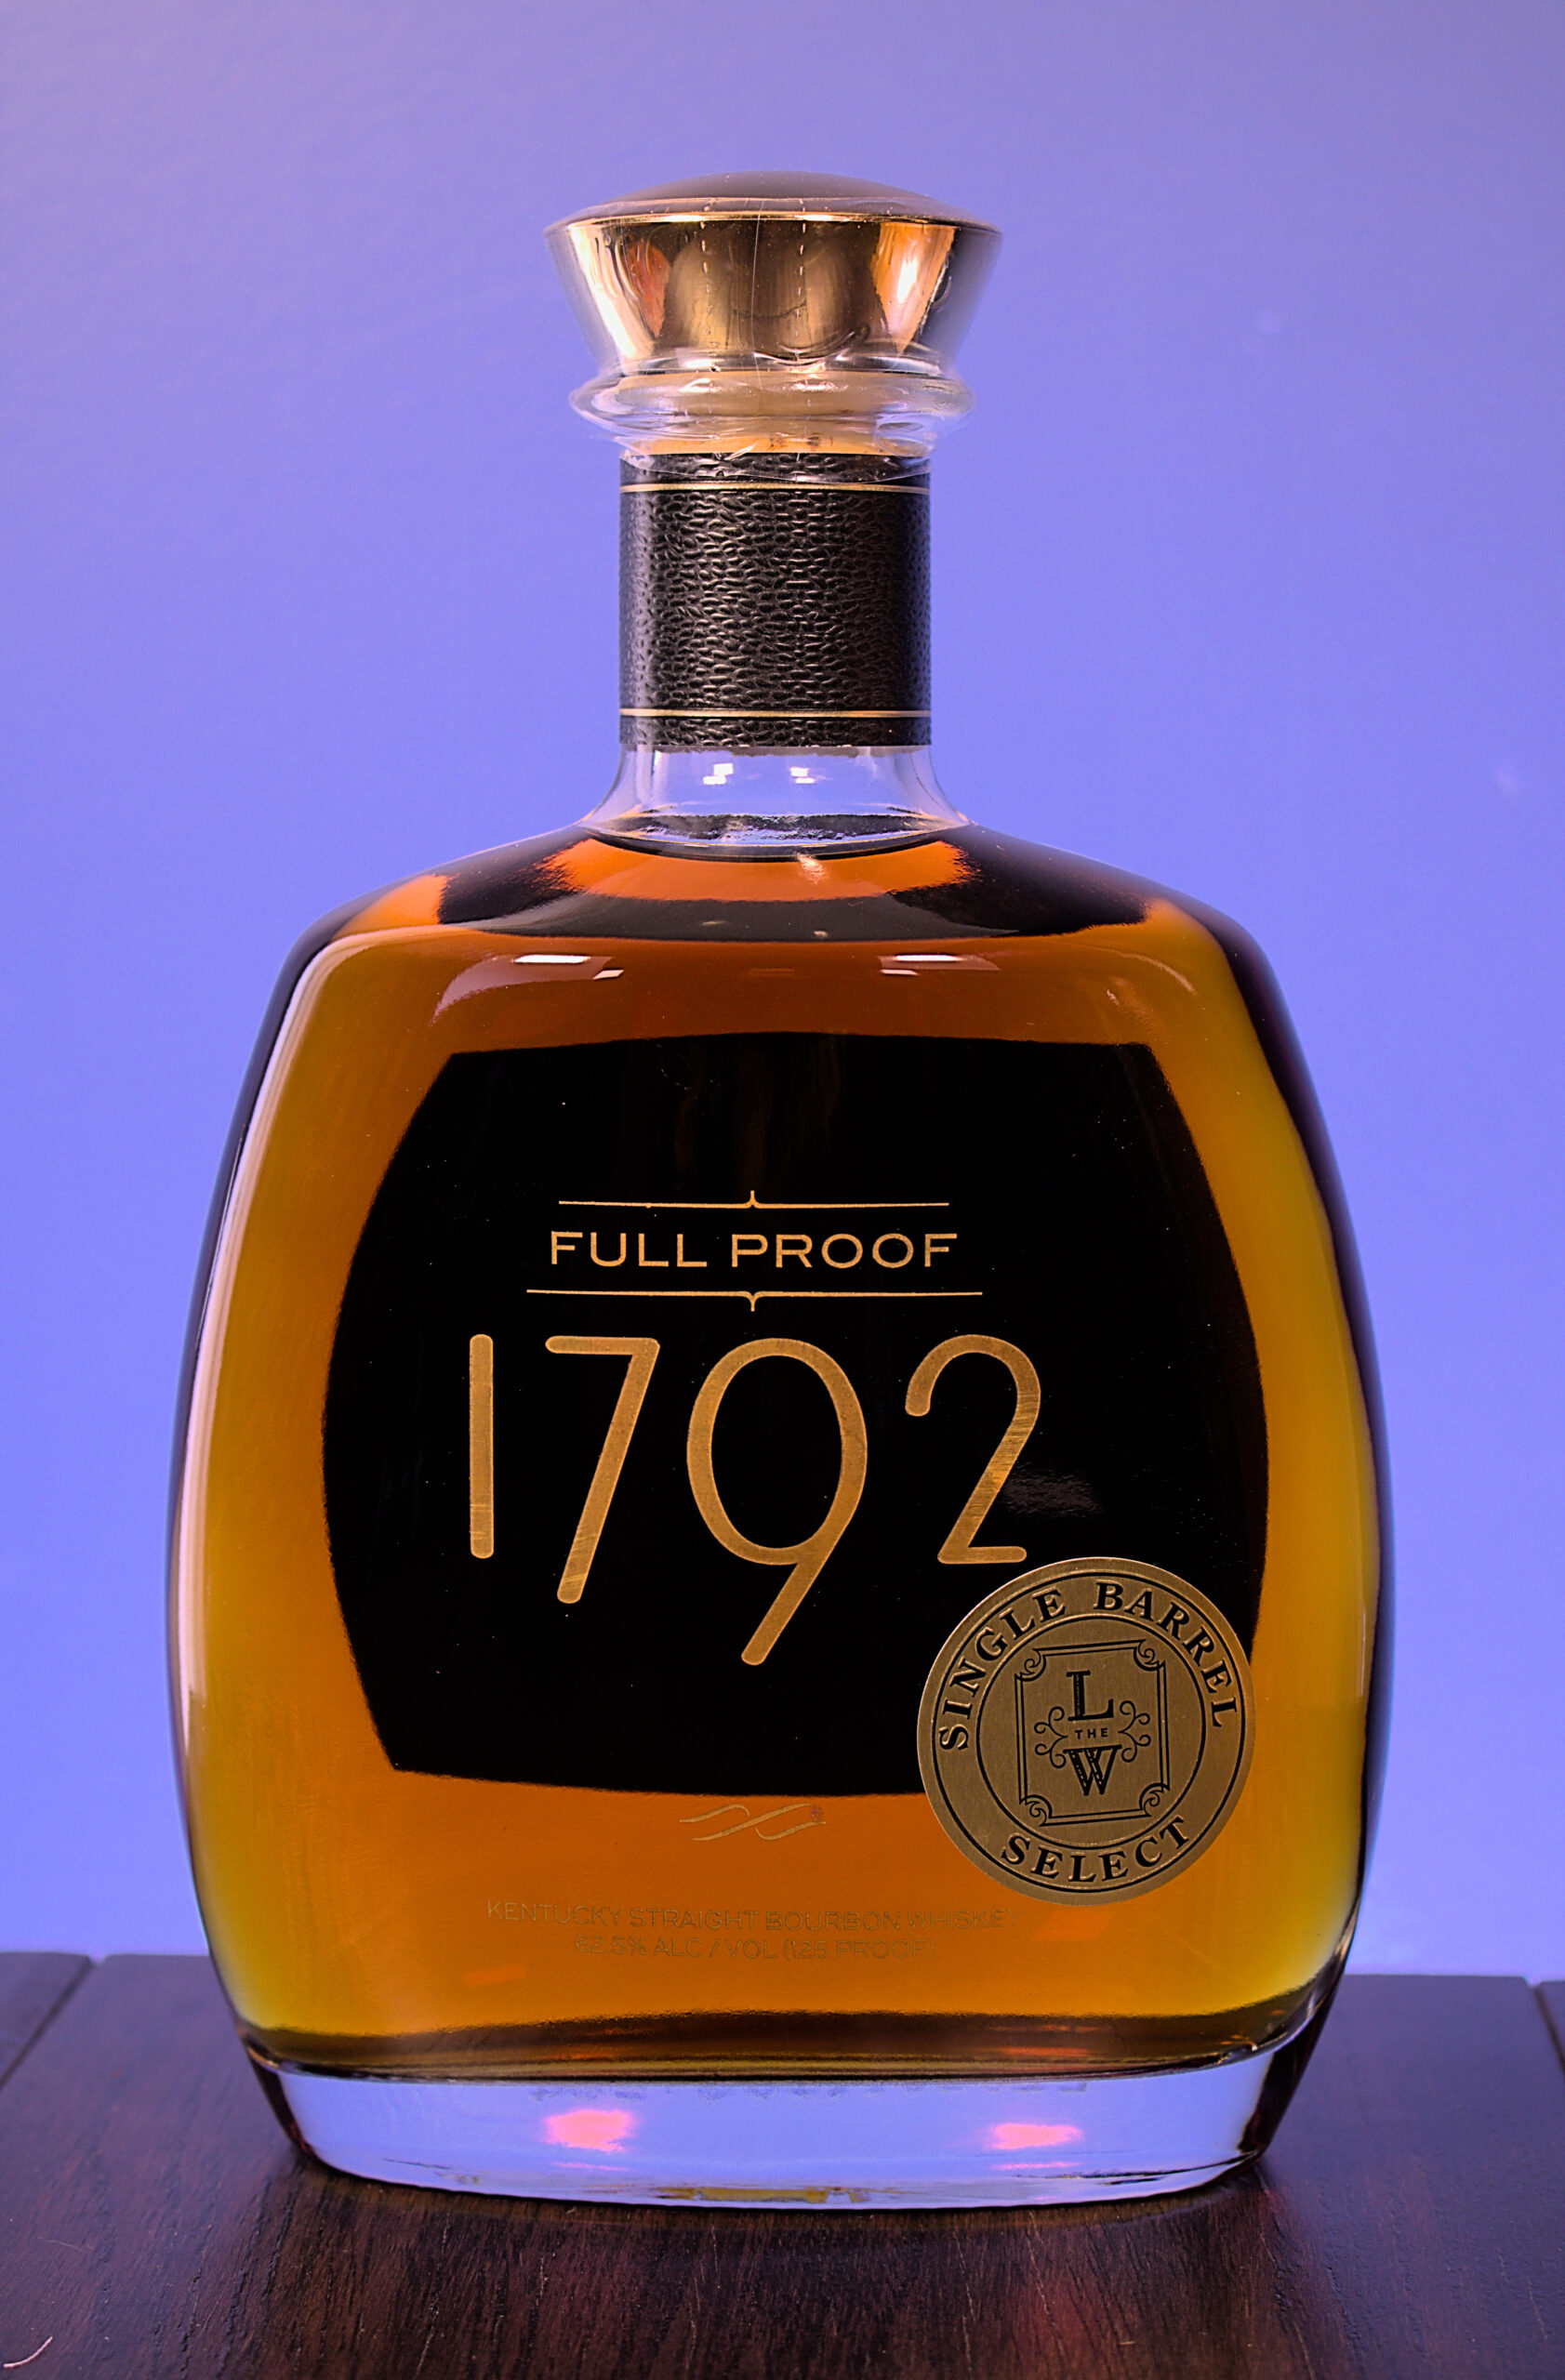 1792 Full Proof – L&W Single Barrel Select